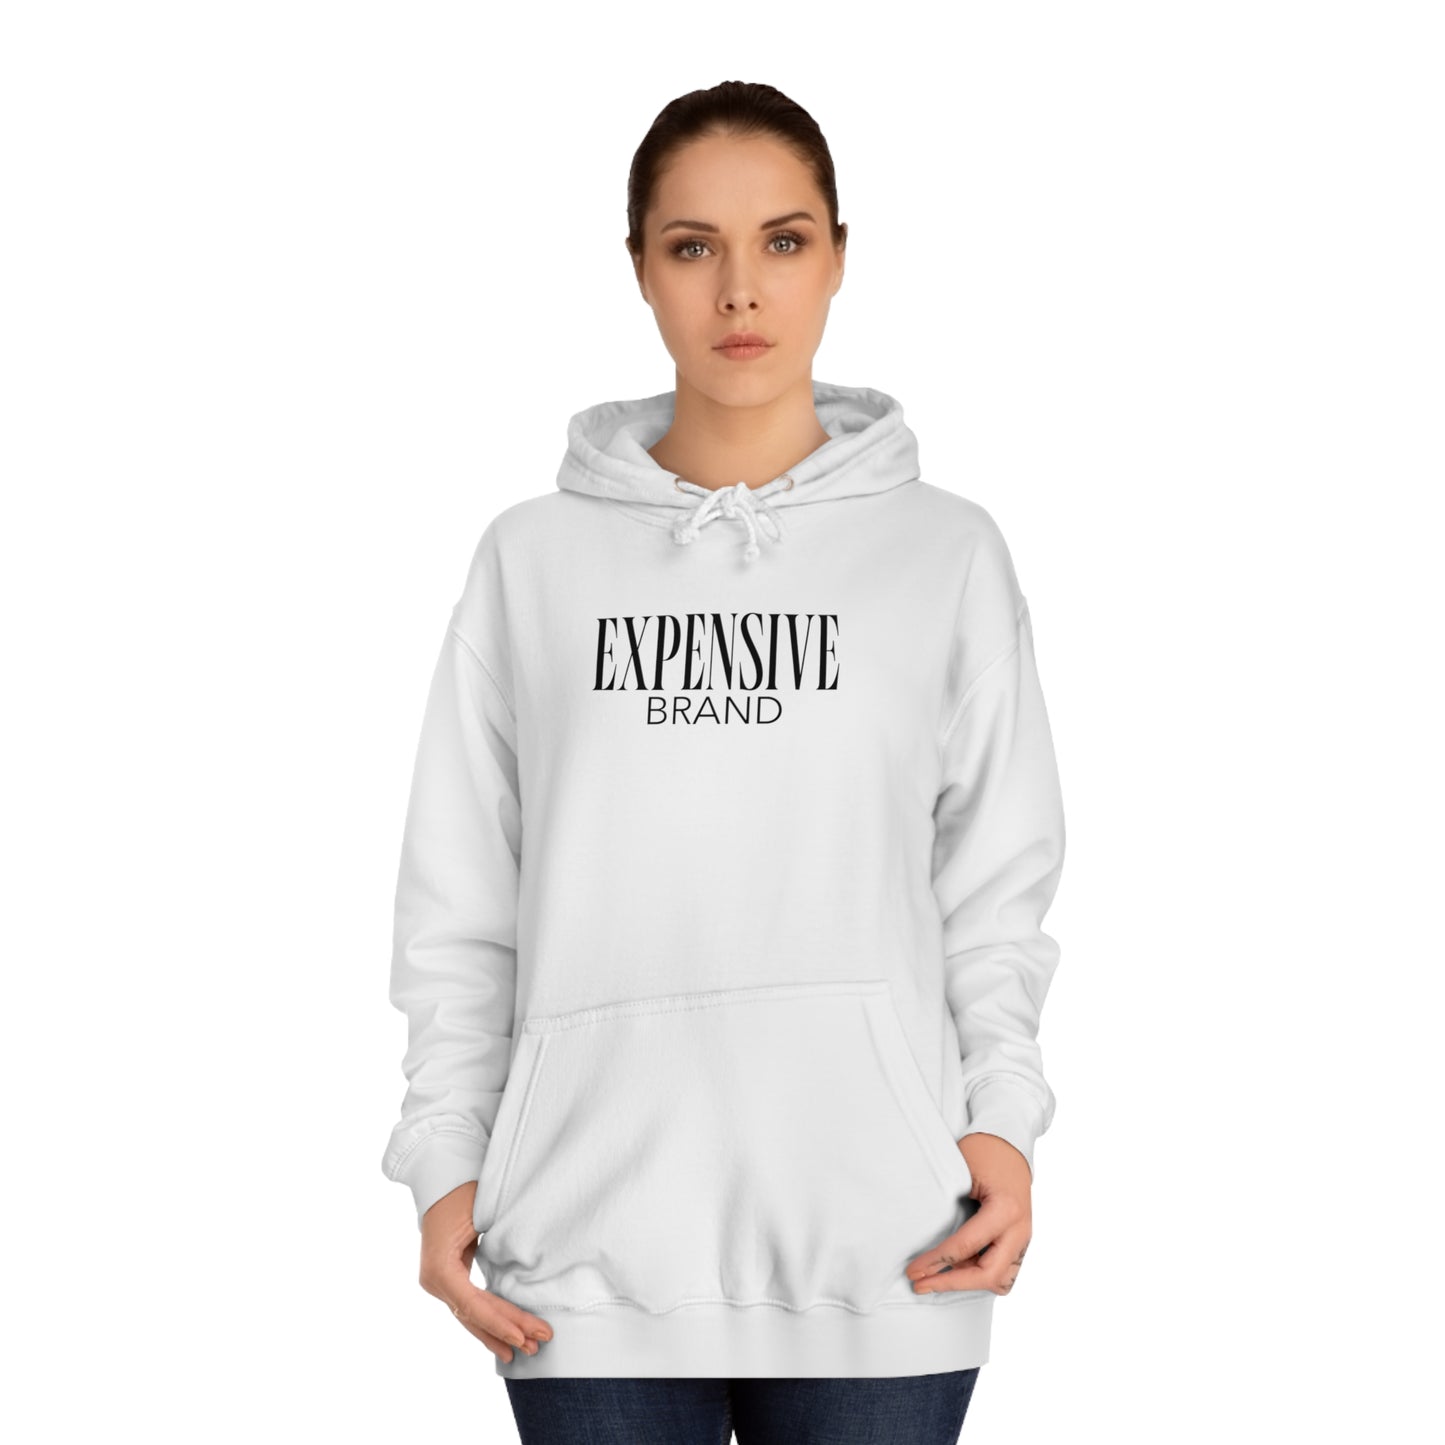 Expensive brand hoodie | Wit | Kleding met humor | Unisex